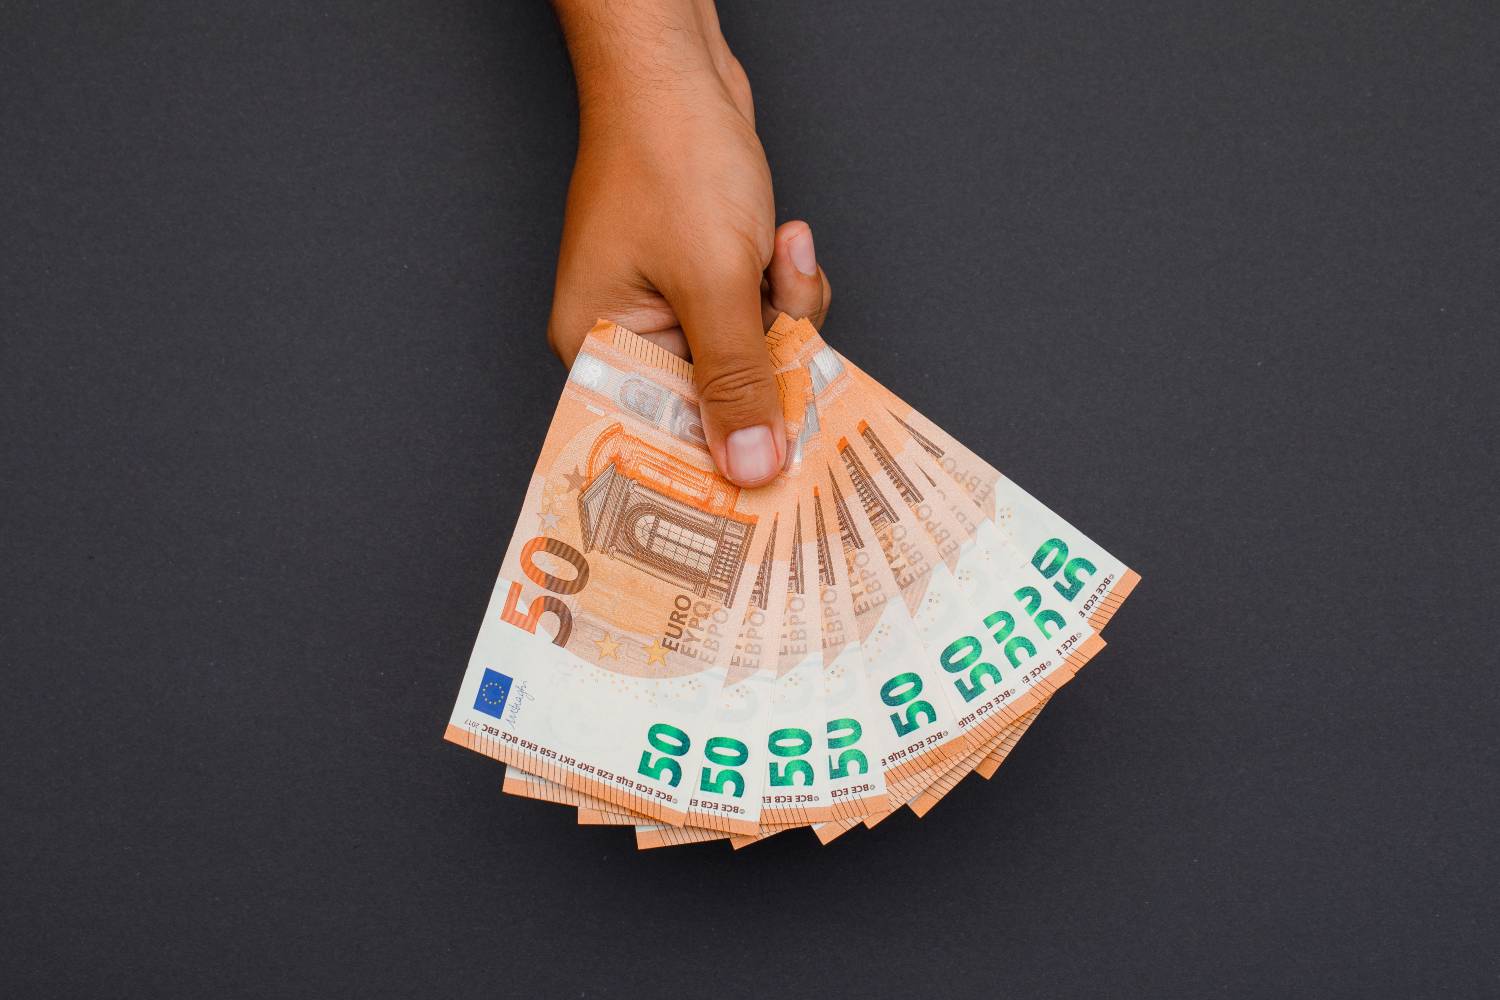 Επίδομα 534 ευρώ: Πότε θα γίνουν οι πληρωμές Φεβρουαρίου - Ημερομηνία